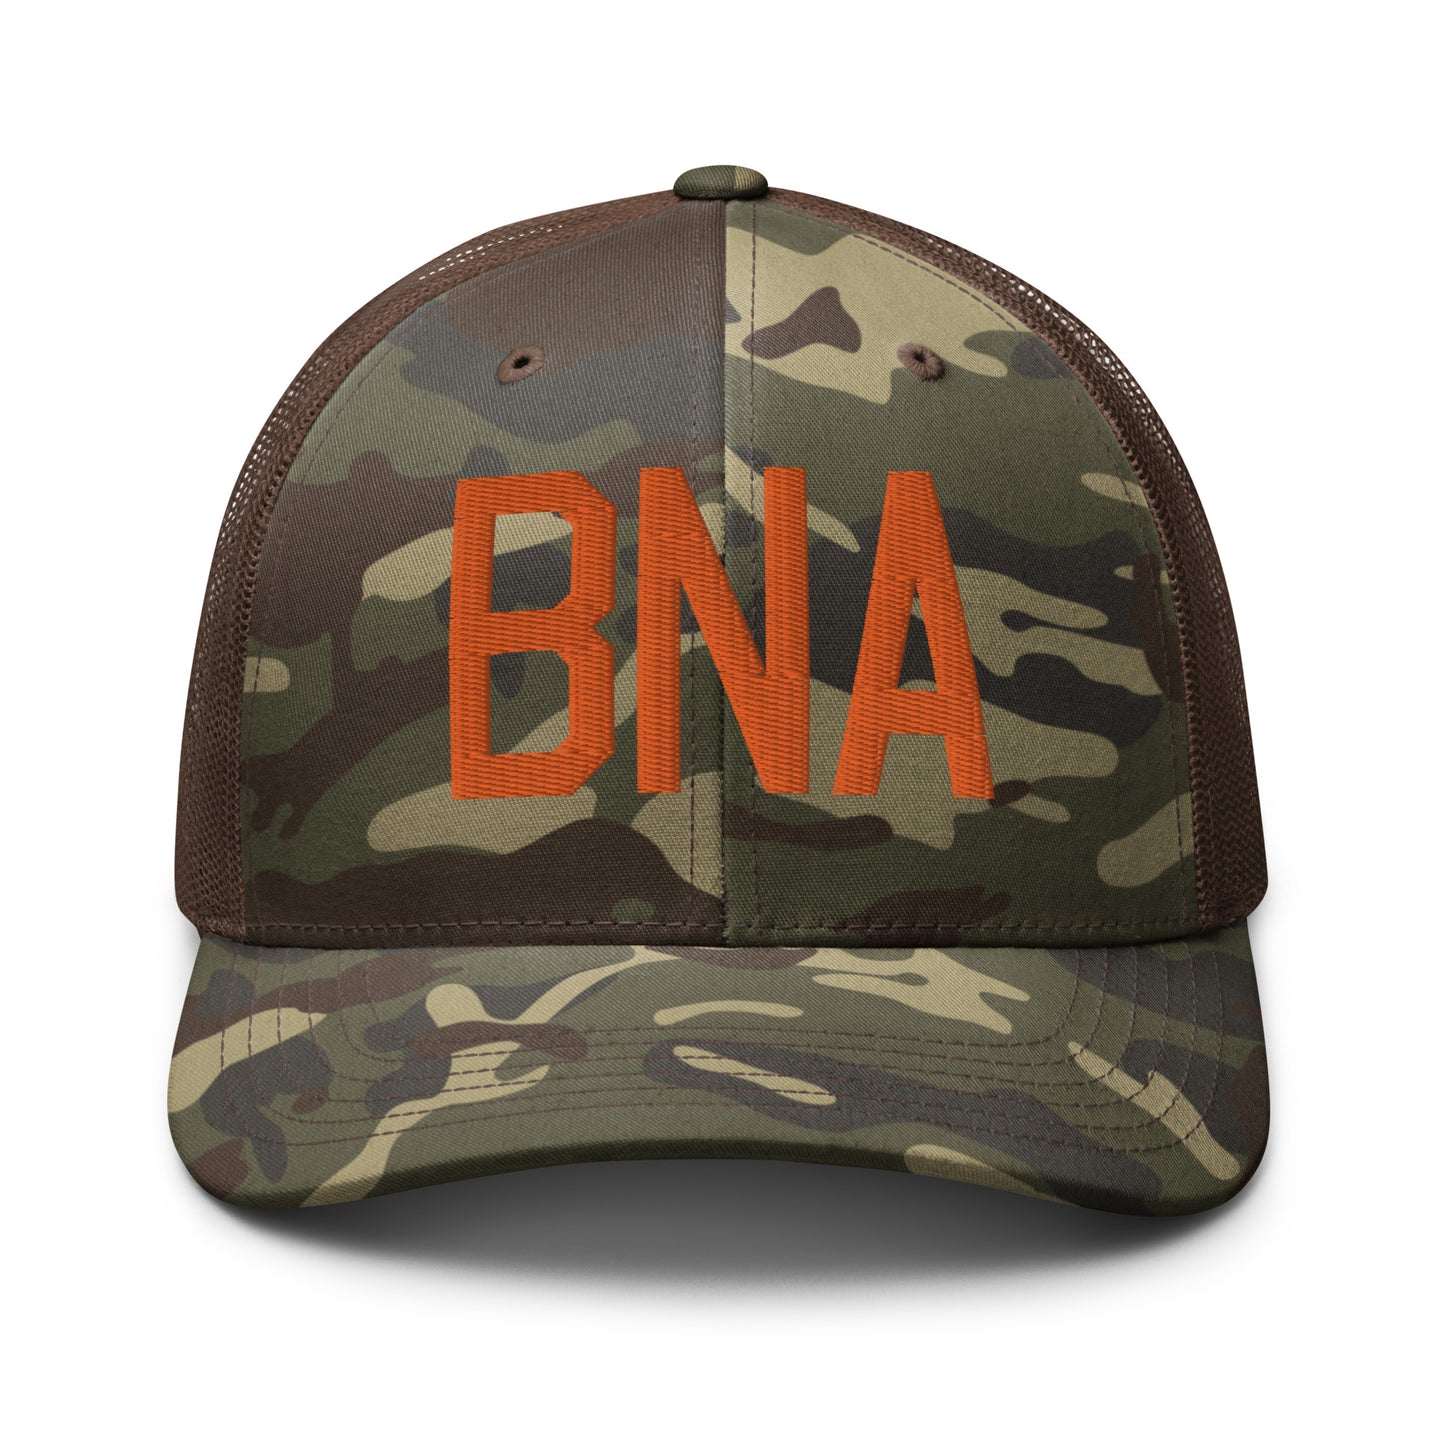 Airport Code Camouflage Trucker Hat - Orange • BNA Nashville • YHM Designs - Image 13